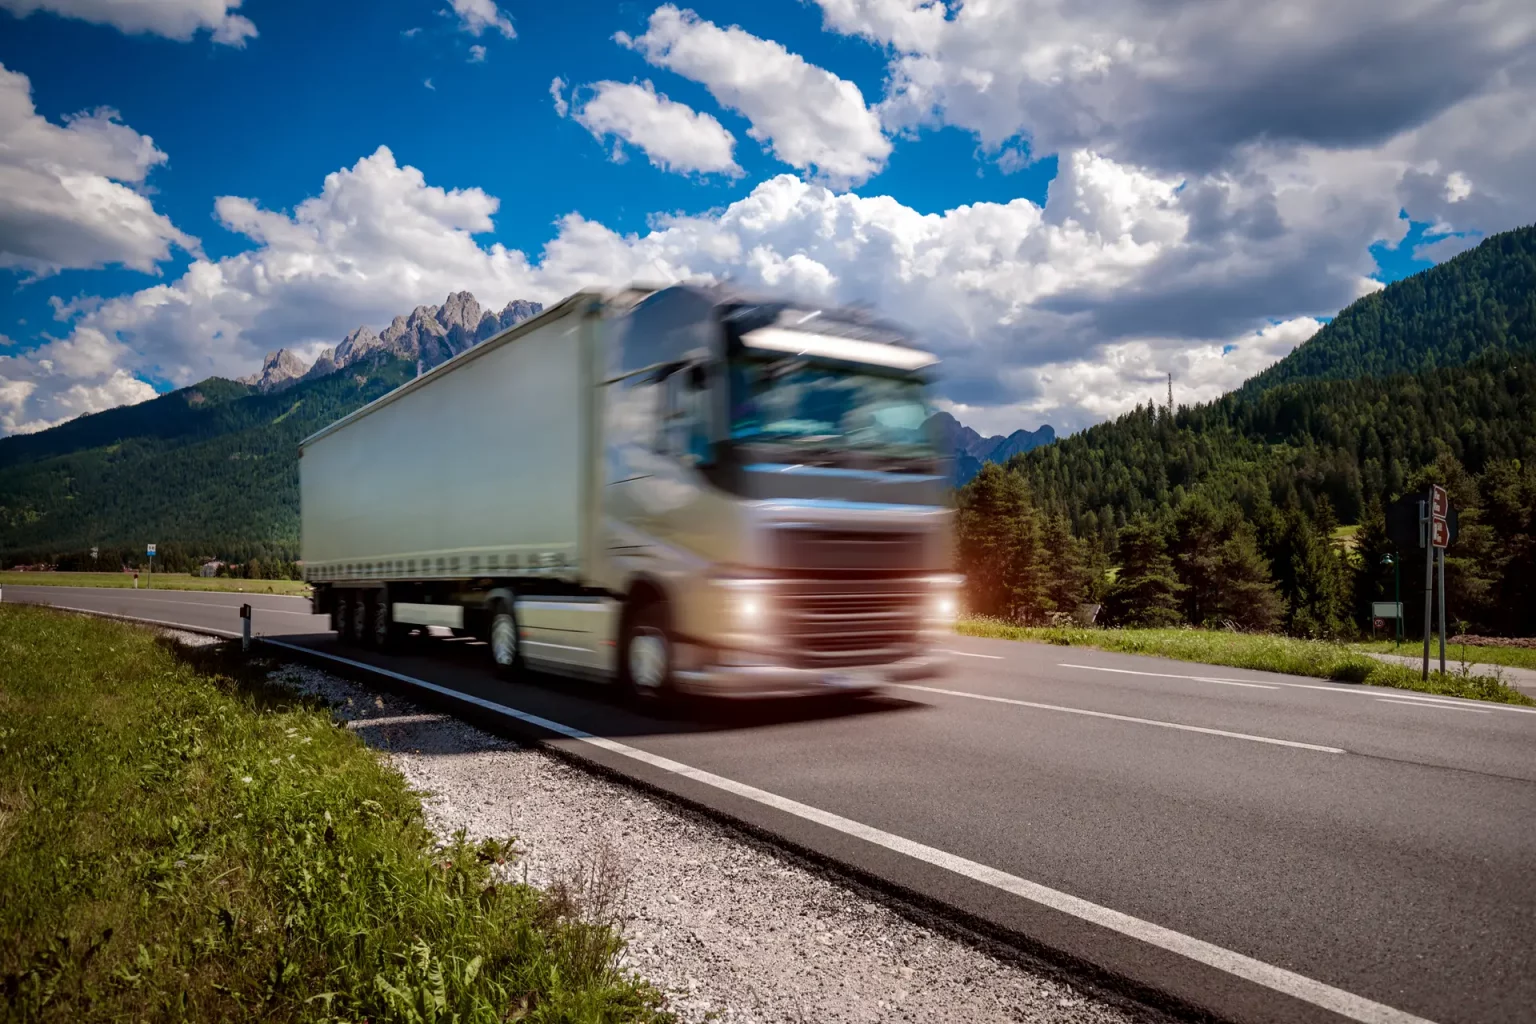 Camion de transport à semi-remorque roulant à grande vitesse sur une autoroute avec des montagnes et un ciel bleu nuageux en arrière-plan. L'effet de mouvement est capturé avec un flou de vitesse sur le camion et la route.